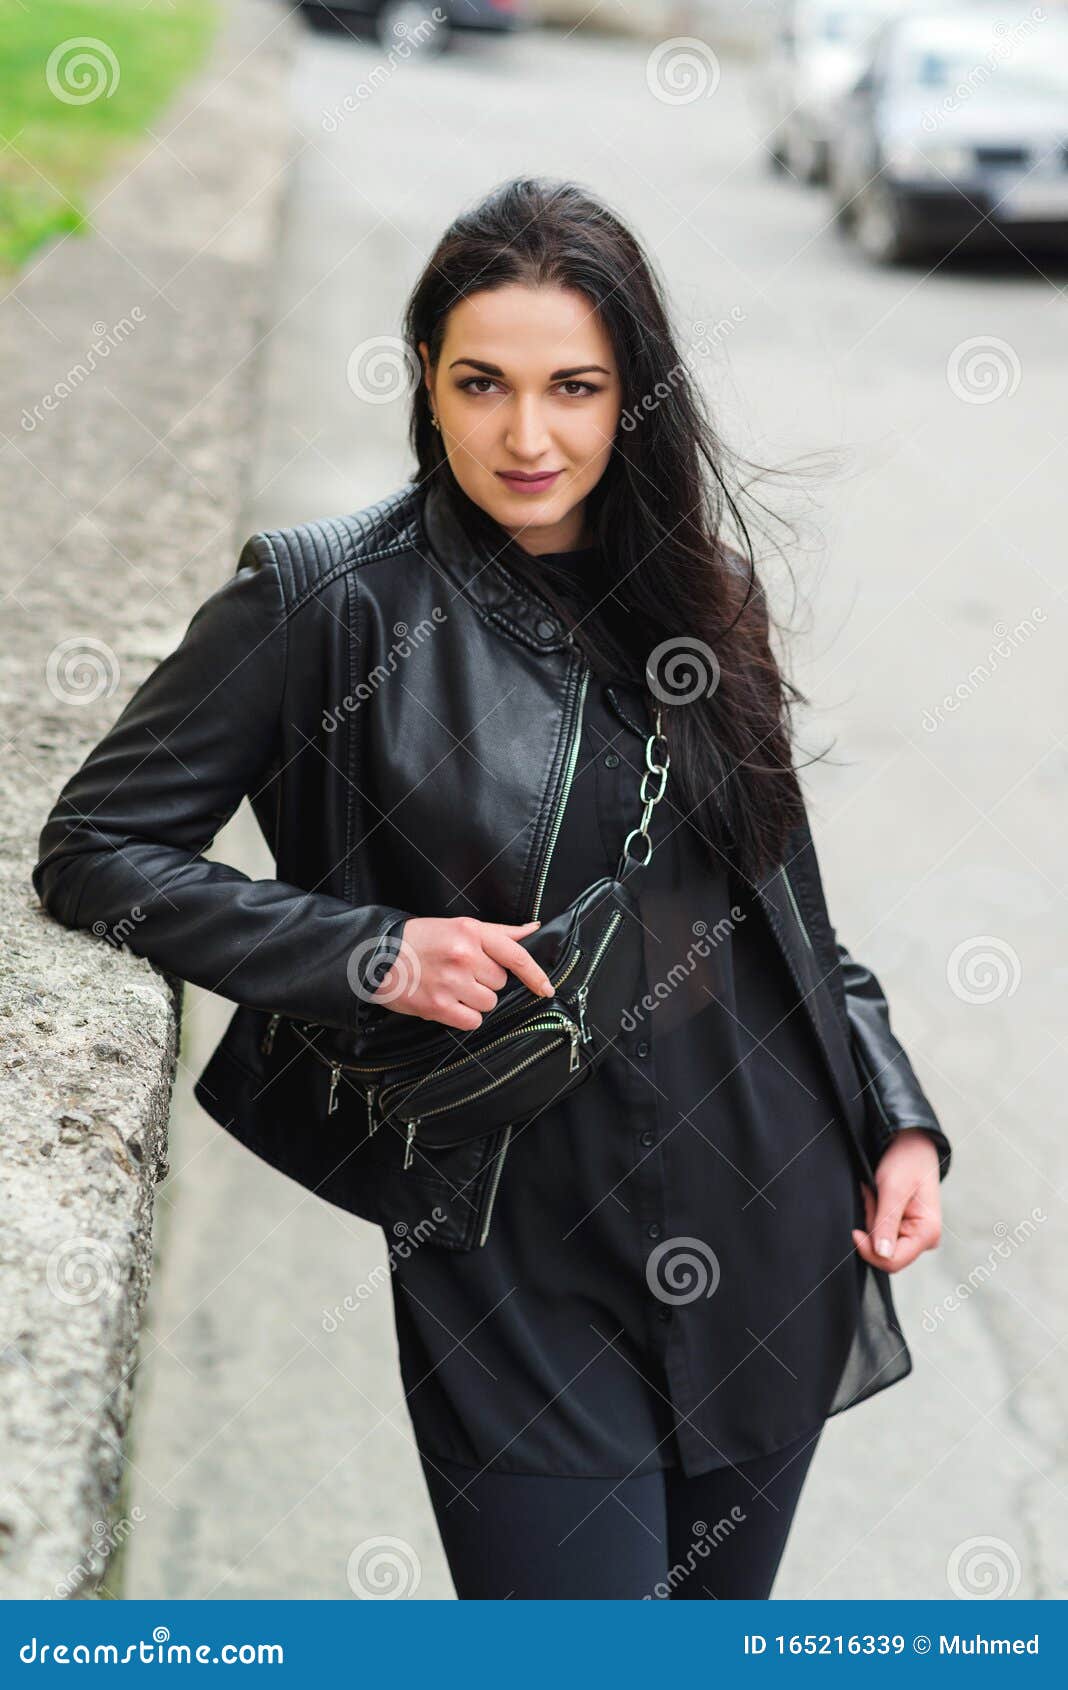 Chica Elegante En La Calle Con Ropa De Moda Mujer Con Chaqueta De Cuero Negro Y De Cuero Pequeño Imagen archivo - Imagen de fondo, hermoso: 165216339